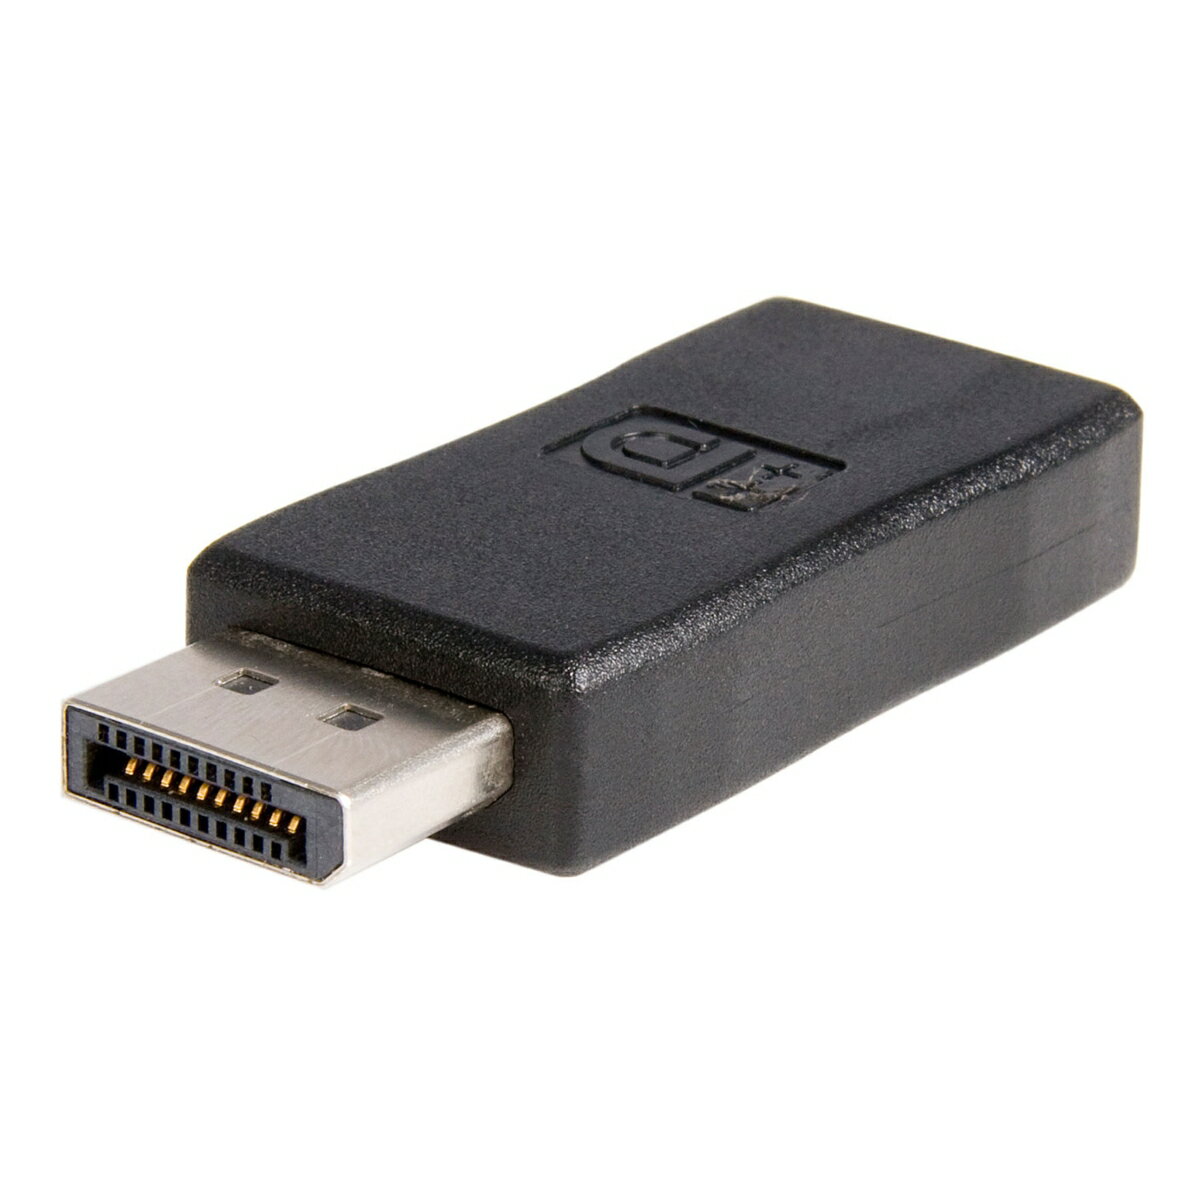 DisplayPortオスコネクタとHDMIメスコネクタを備えたDisplayPort - HDMIアダプタ。このアダプタでDisplayPortビデオカード ／ ソースから既存の（HDMI）ディスプレイに出力することができます。

最大解像度は1920x1200（コンピュータの場合）／ 1080p（HDTVの場合）に対応しており、DisplayPortの卓越したグラフィックパフォーマンスを実現します。既存のHDMIディスプレイをDisplayPort対応機能内蔵のディスプレイにアップグレードしなくても済むため、費用対効果の高いソリューションとなっています。

また、DP++（DisplayPort++）ポートを必要とするパッシブアダプタケーブルであるため、DVIやHDMI信号もポートを介してパススルーすることができます。

ビデオソースでサポートしていれば、オーディオパススルーを行うことができます。 ビデオソースの取扱説明書でサポート状況を確認してください。

StarTech.comでは3年間保証と無期限無料技術サポートを提供しています。